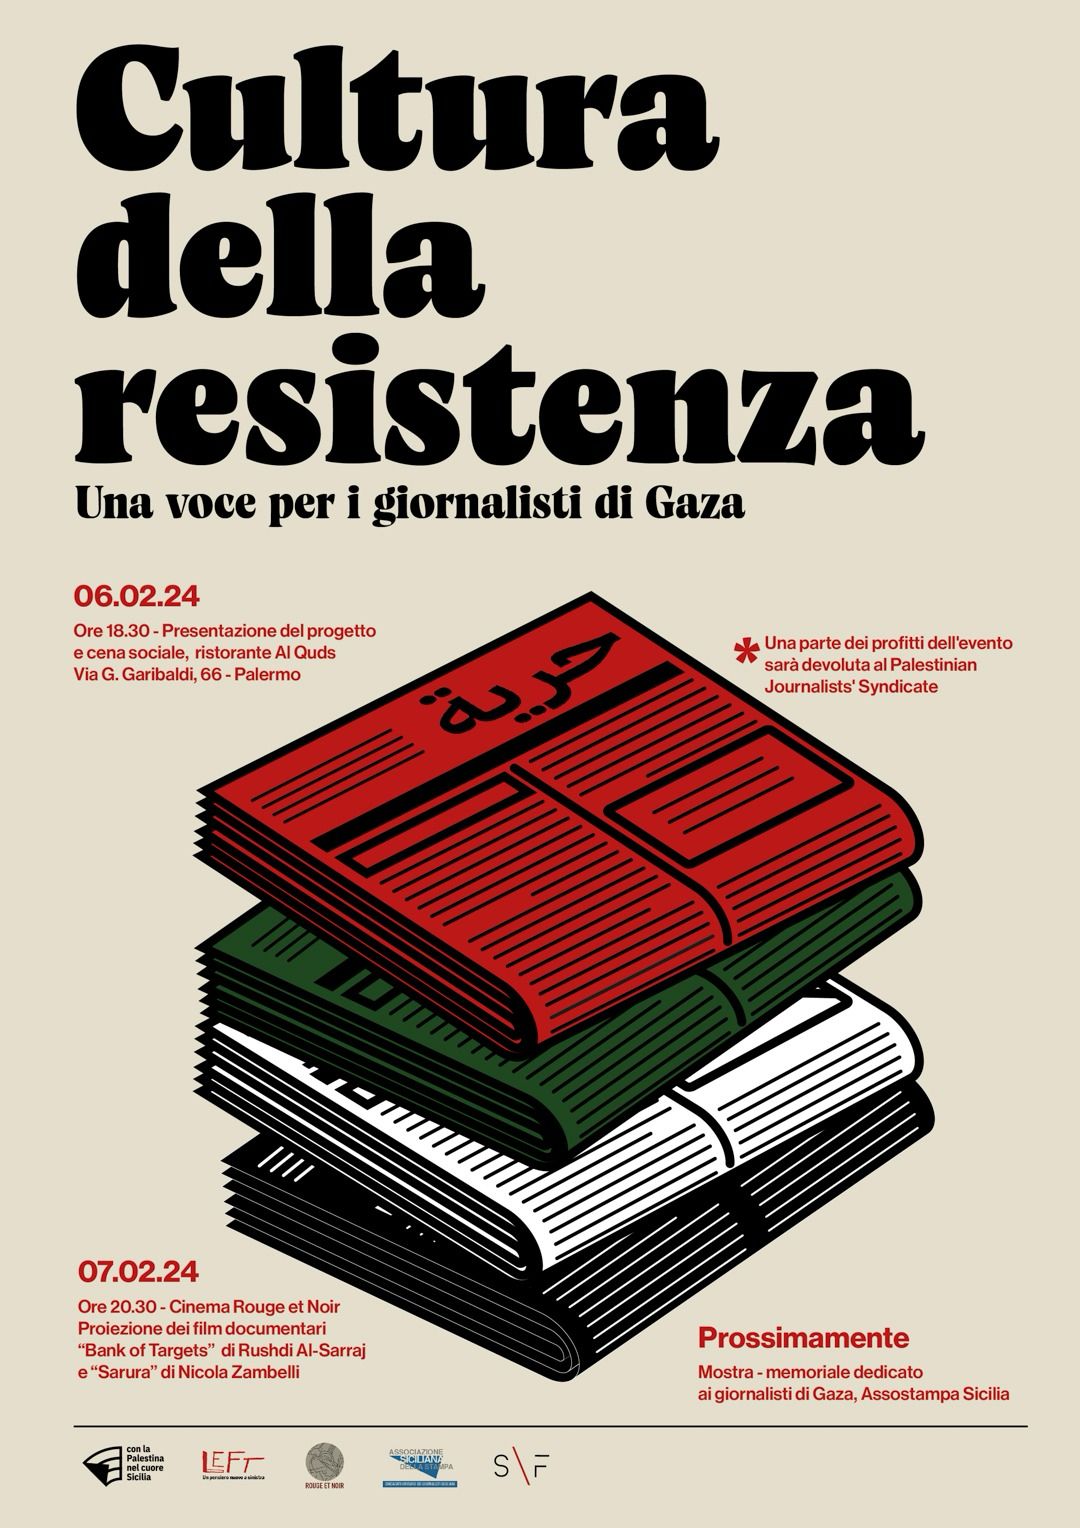 Inizia oggi la “due giorni” di iniziative a Palermo a sostegno dei giornalisti di Gaza.